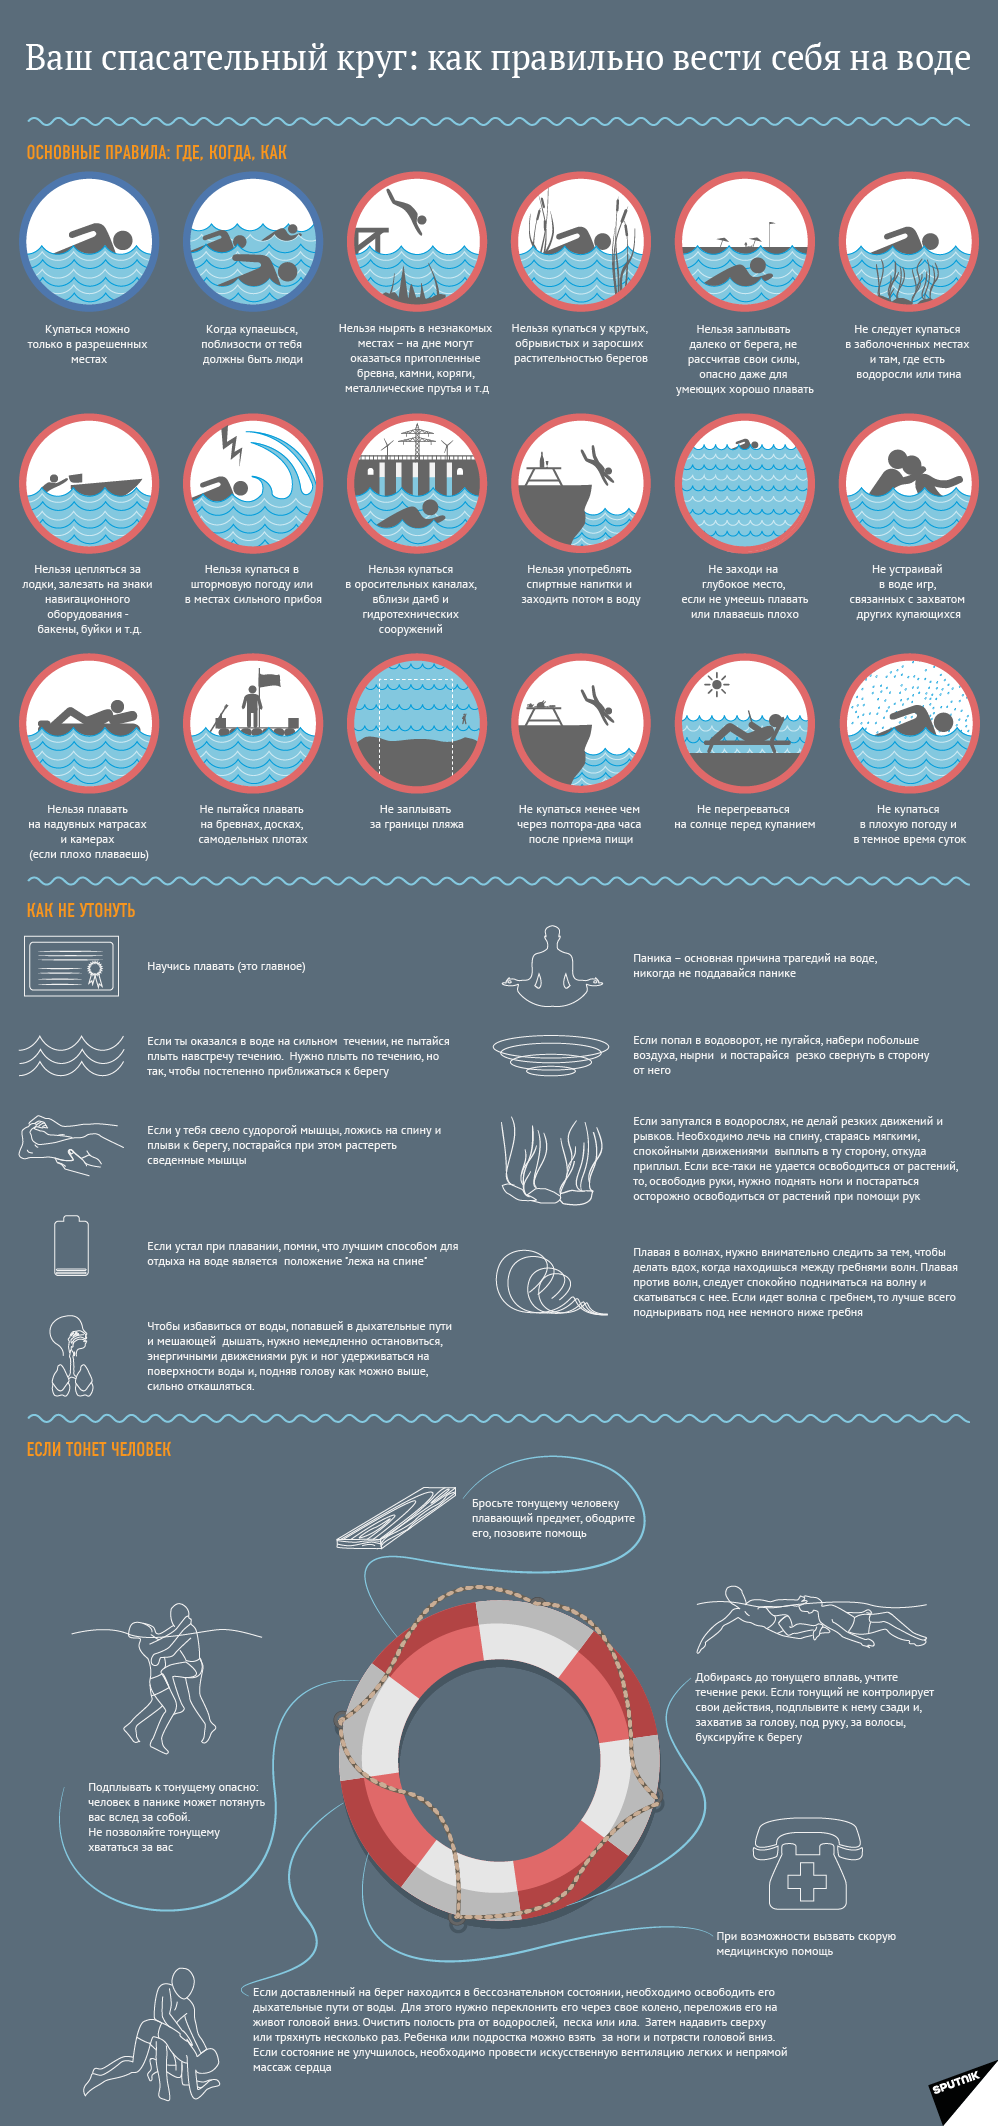 Инфографика трагедия в воде утопающий - Sputnik Азербайджан